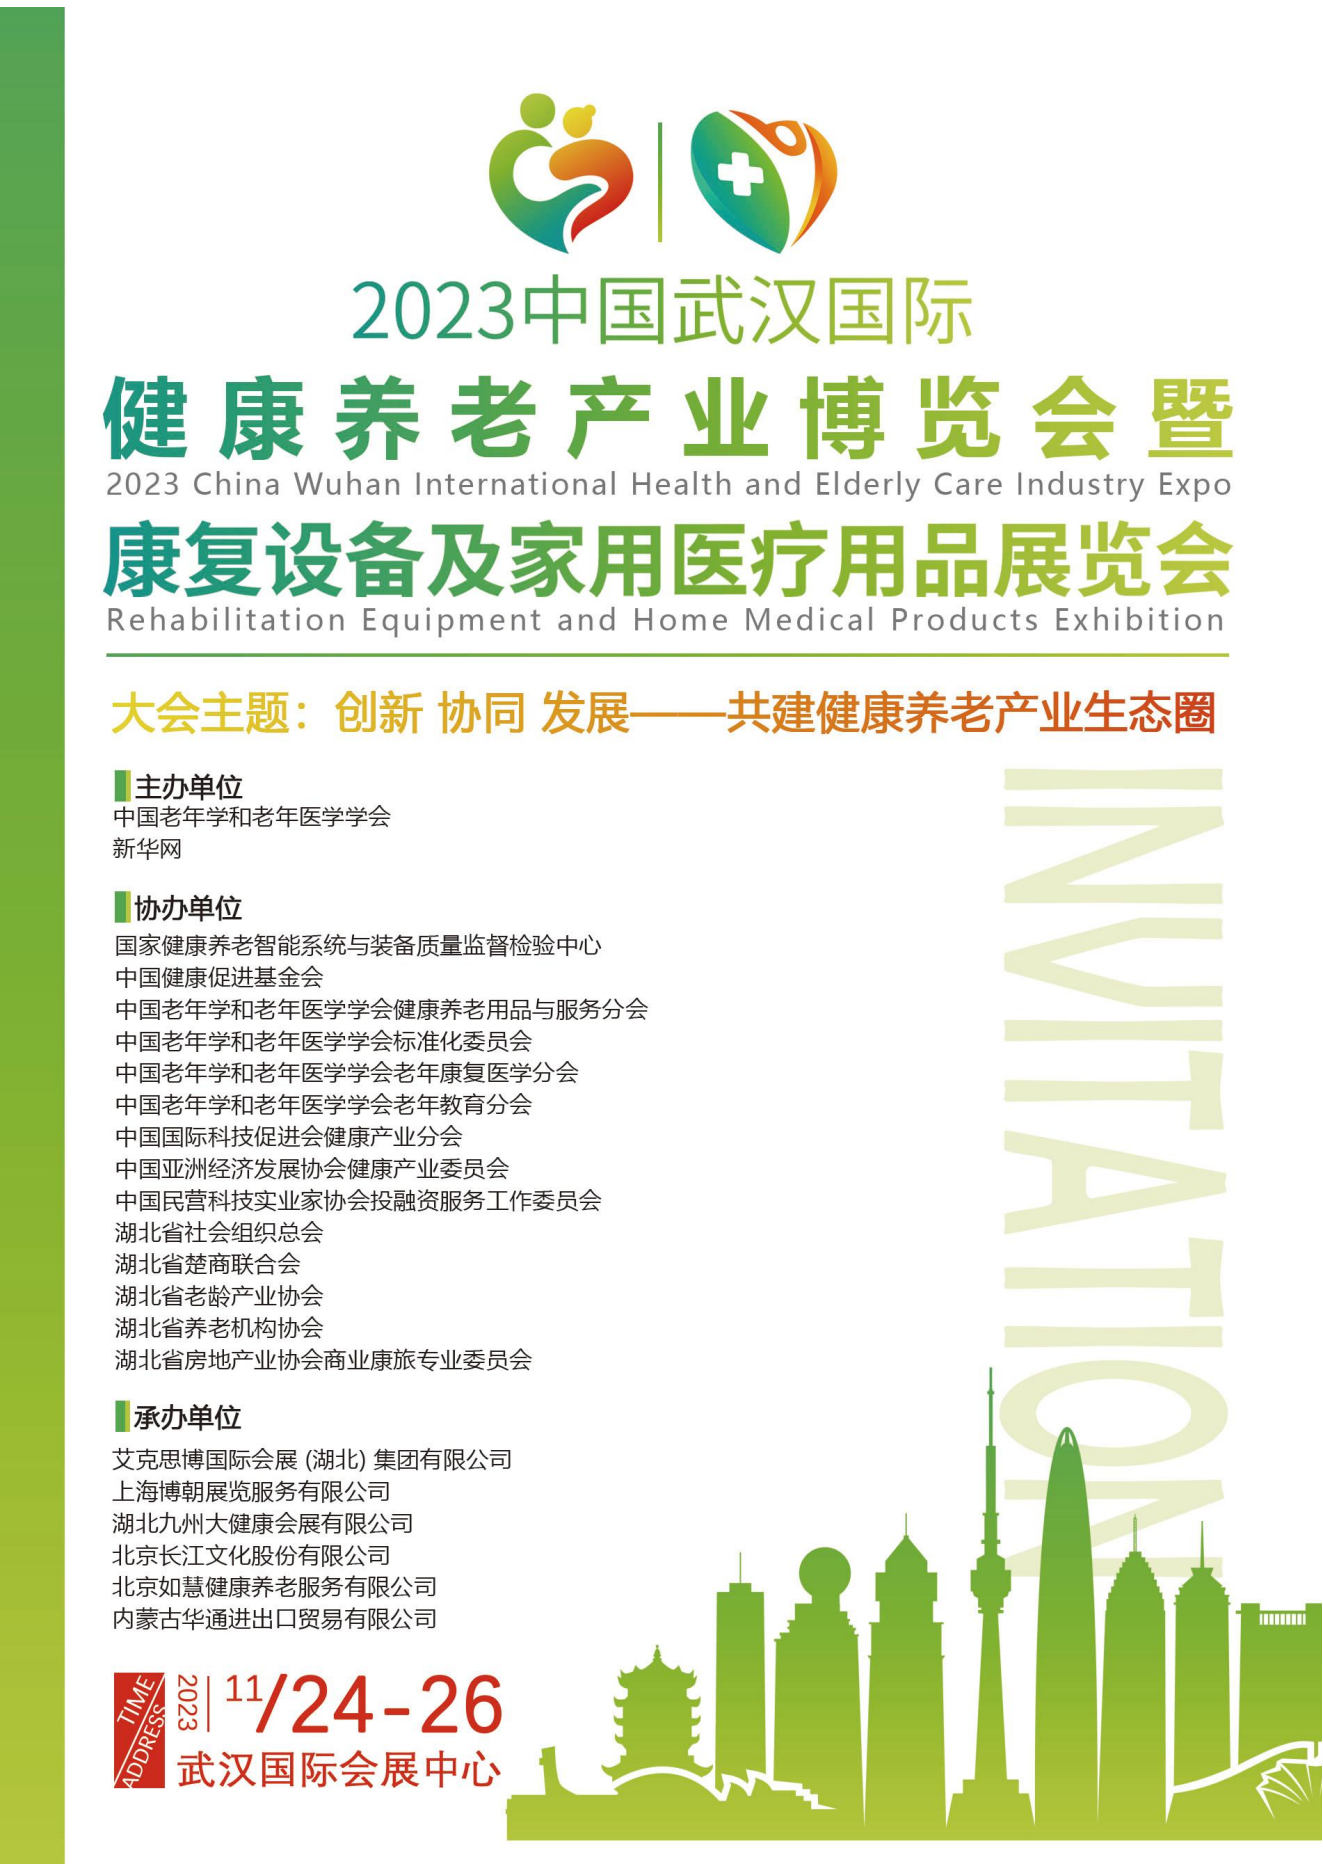 2023武汉老博会|武汉国际健康养老产业博览会_时间_地点